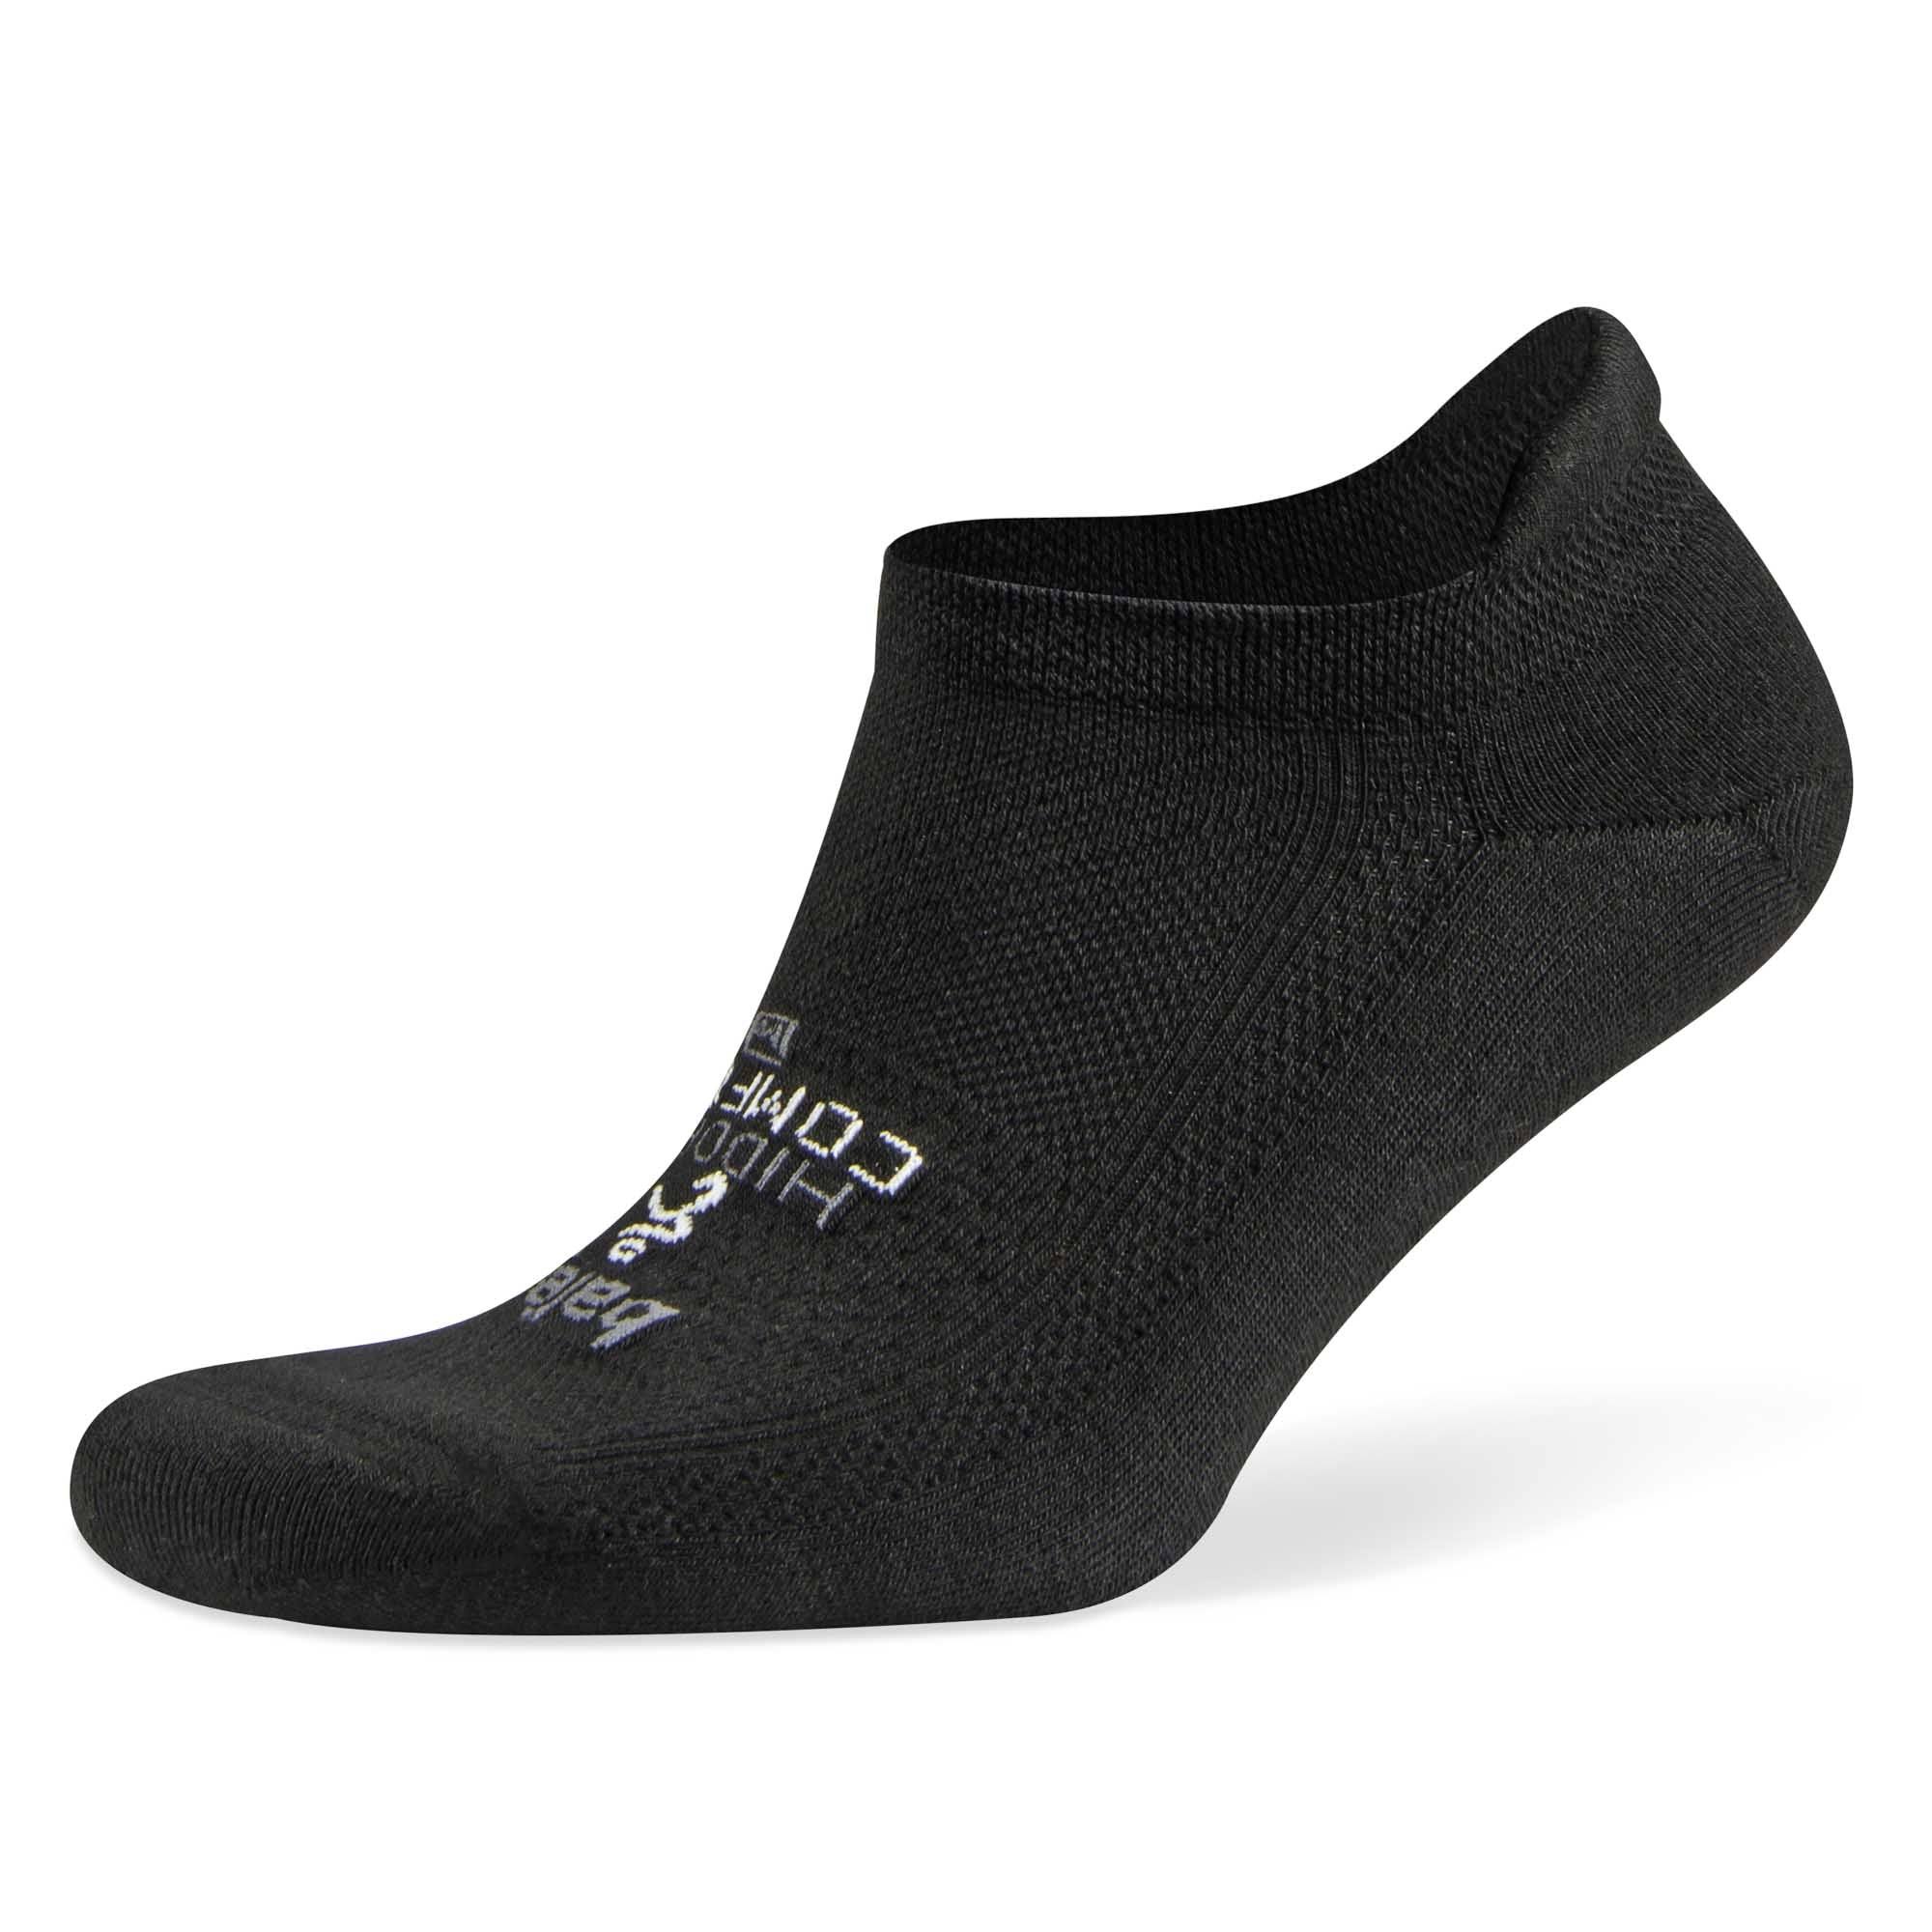 Balega Hidden Comfort Sole Cushioning Running Socks - Black